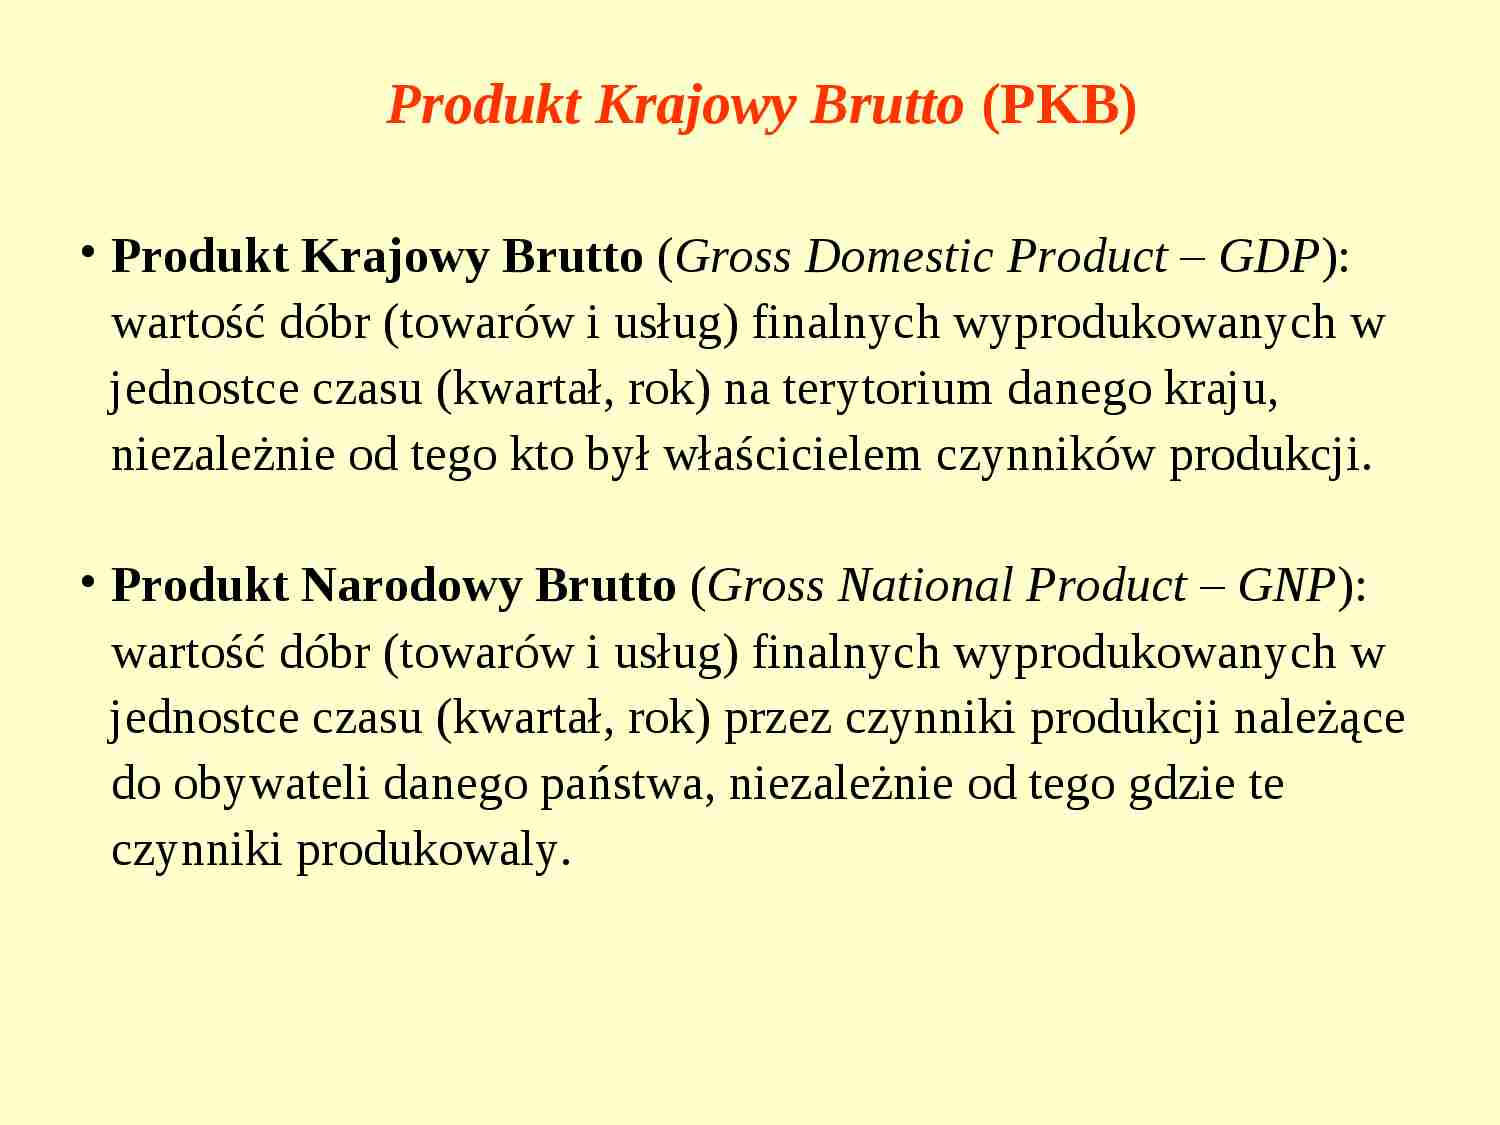 Produkt Krajowy Brutto (PKB) - prezentacja  - strona 1